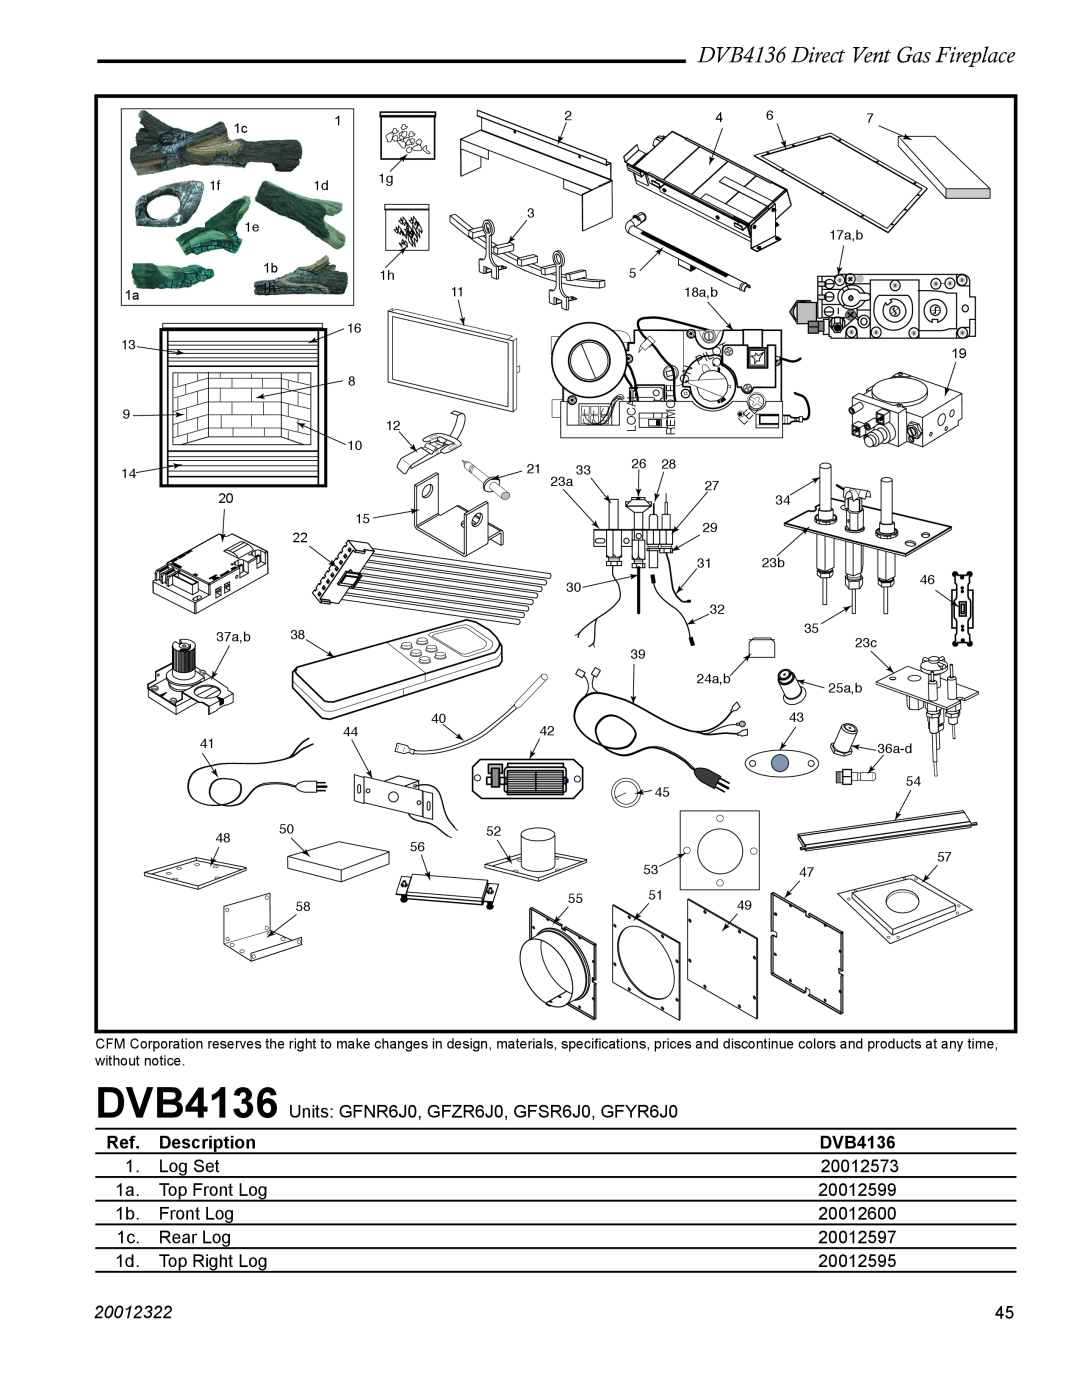 Majestic Appliances manual DVB4136 Direct Vent Gas Fireplace, Description, 20012322 